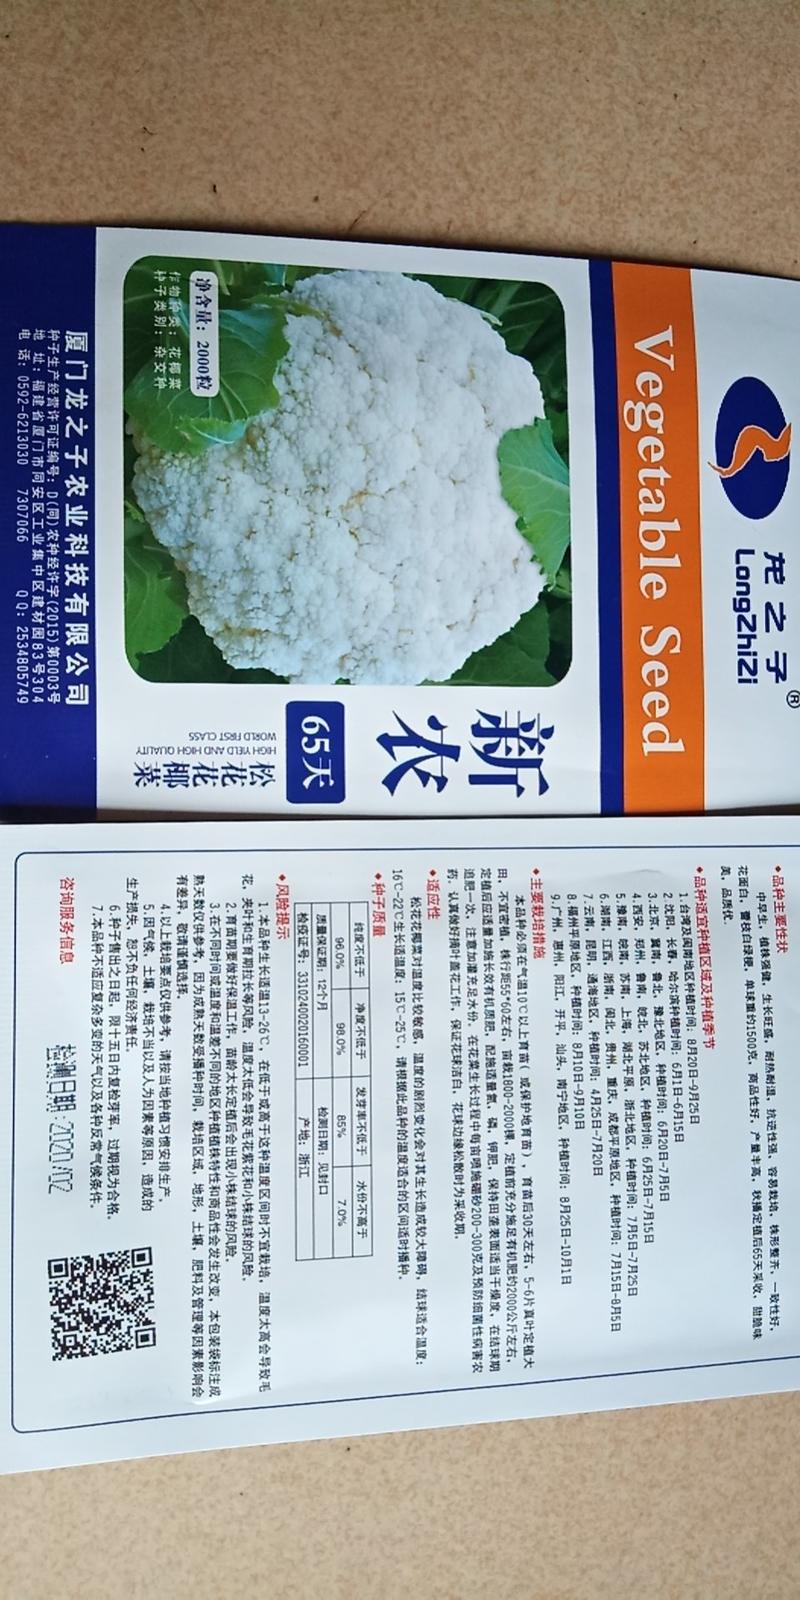 松花菜种子菜花种子雪莹系列抗病高产龙华小米系列